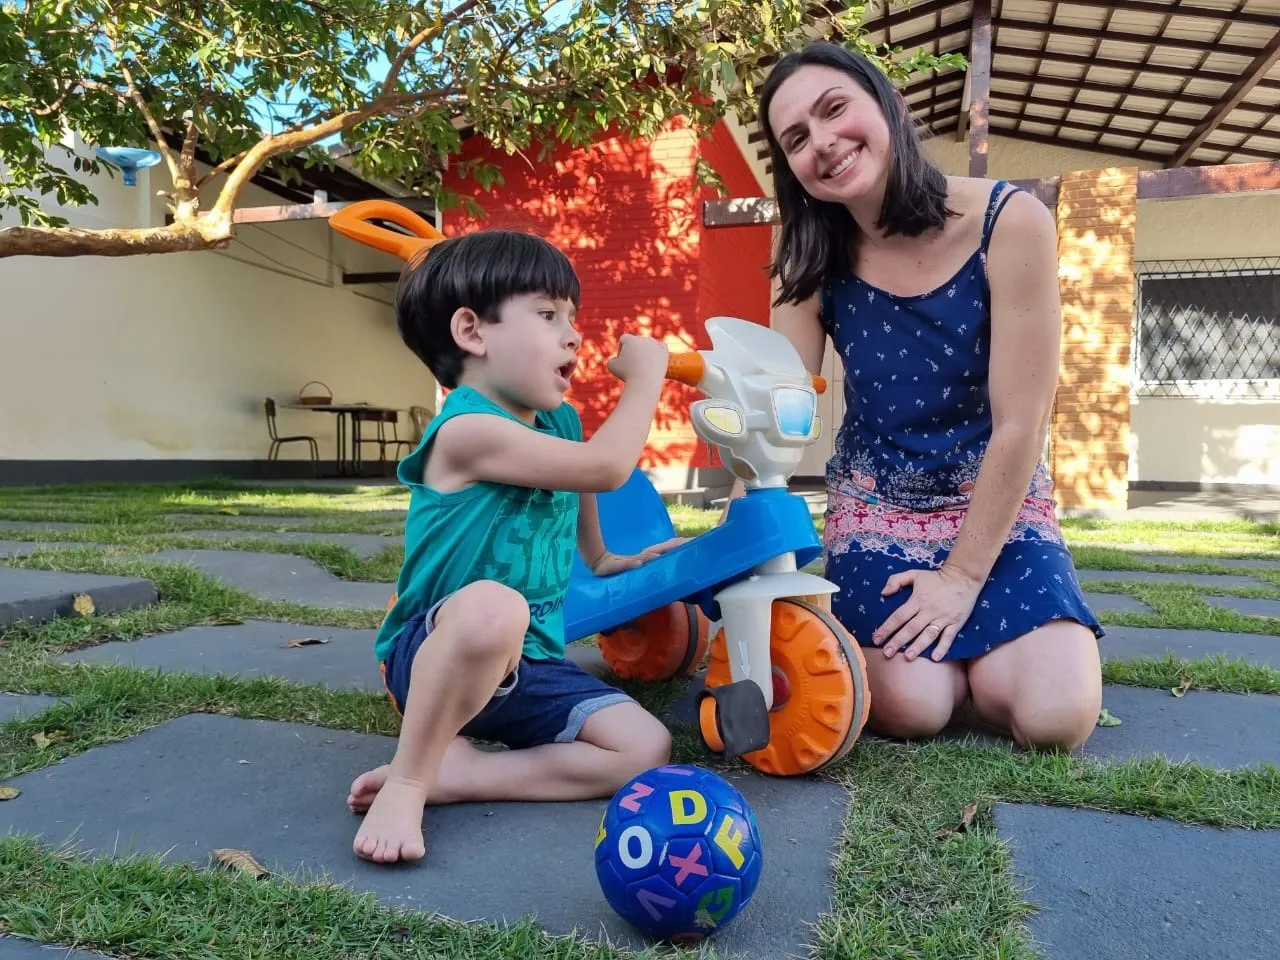 Professora Verônica Salvador, 35 anos, e o filho Bernardo Salvador, de 4 anos, diagnosticado com autismo